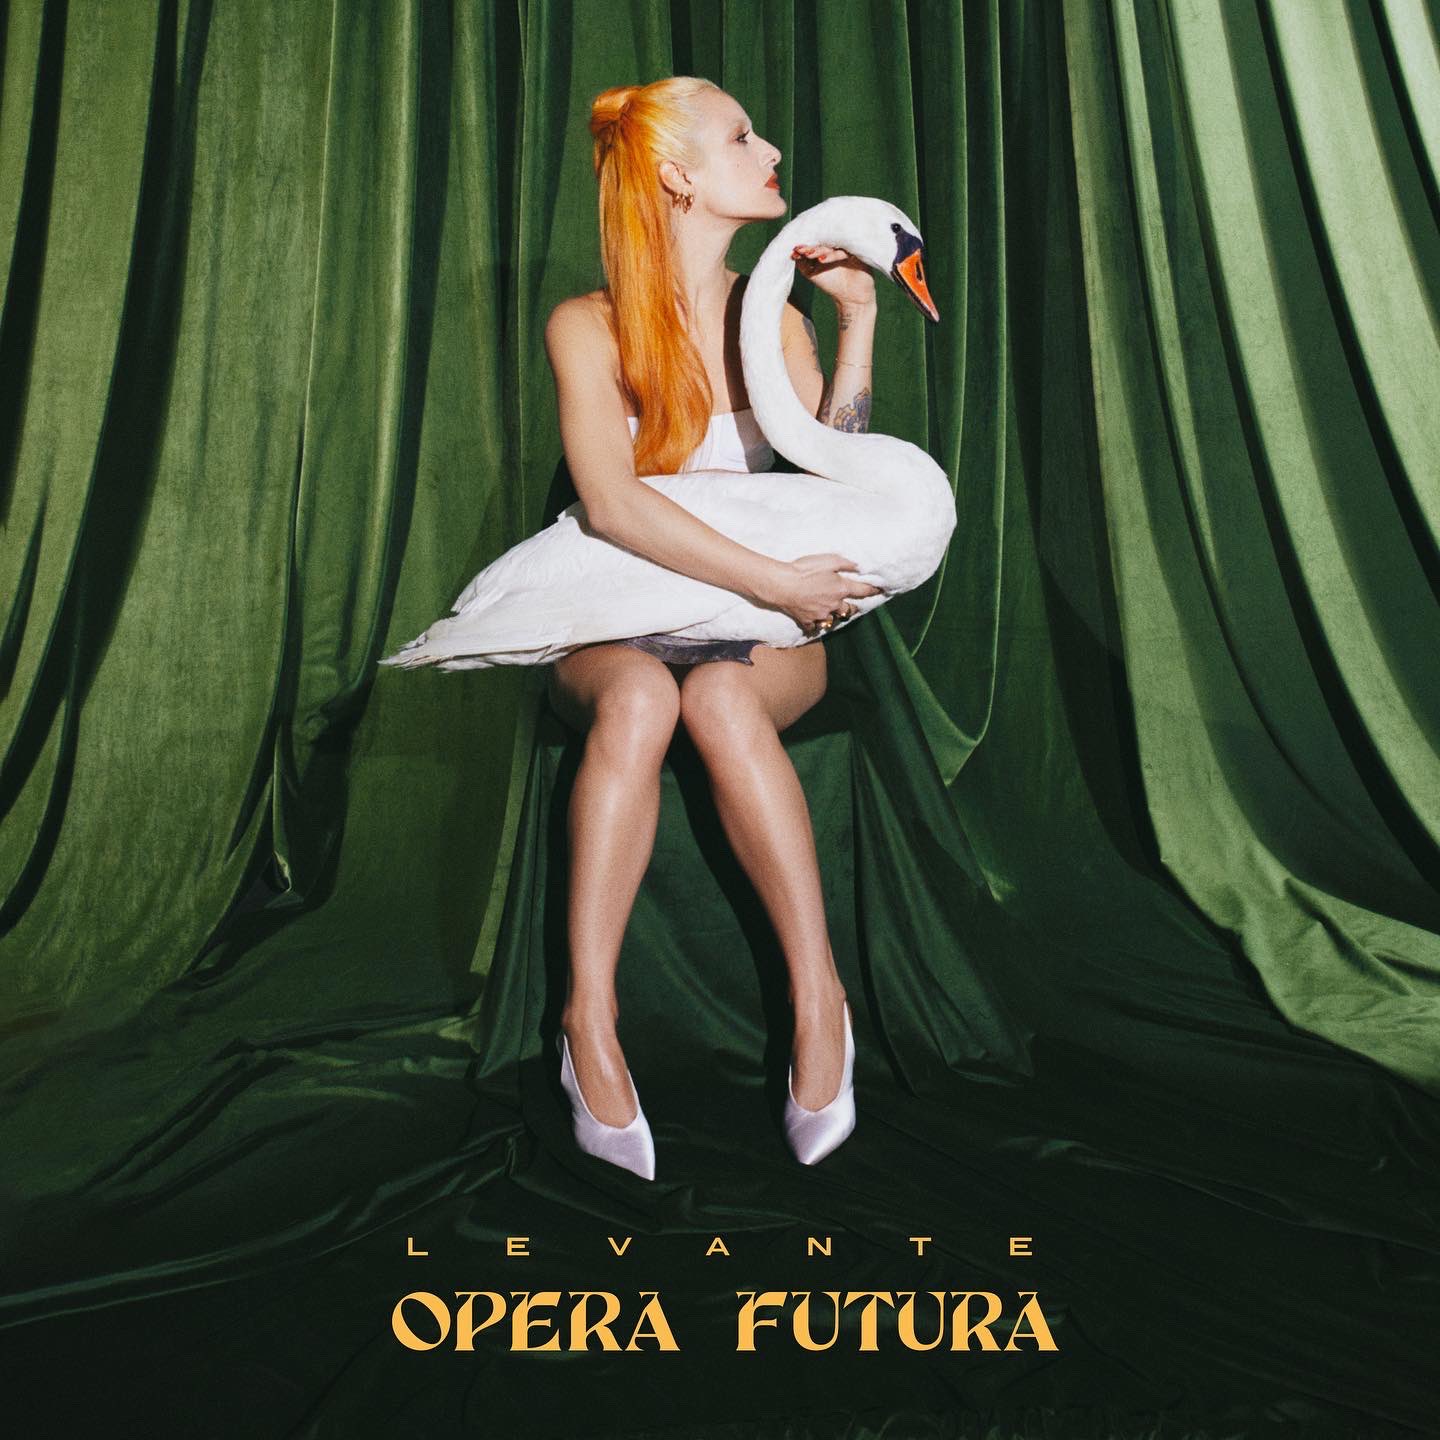 Levante Opera futura cover artwork